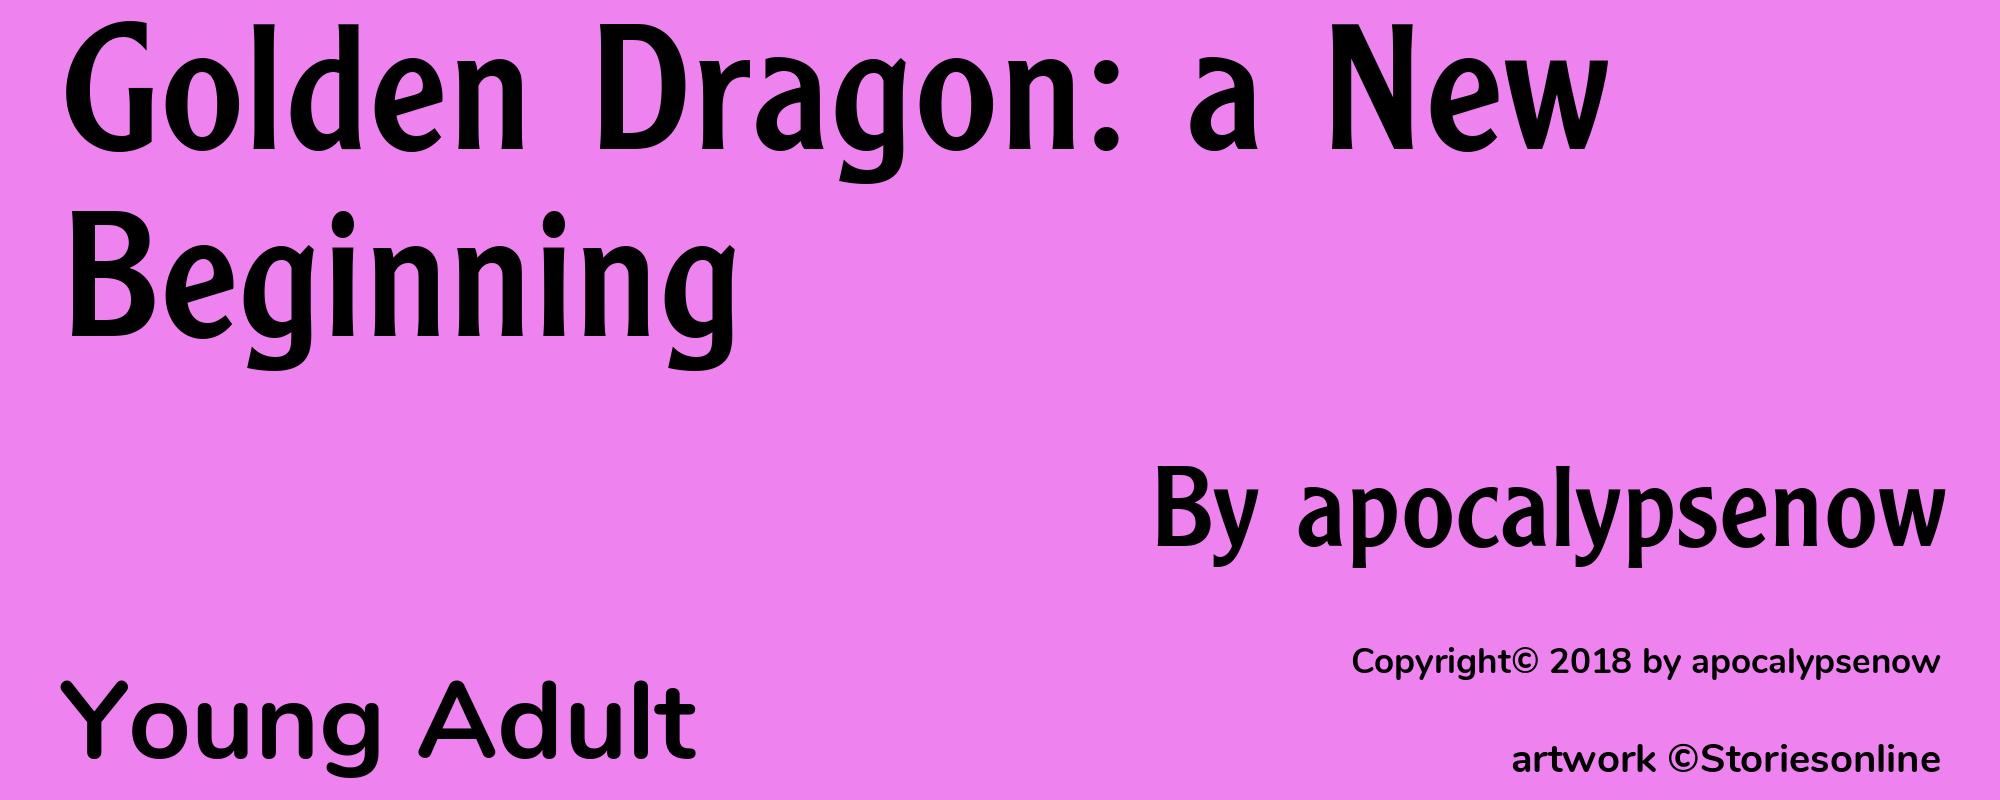 Golden Dragon: a New Beginning - Cover